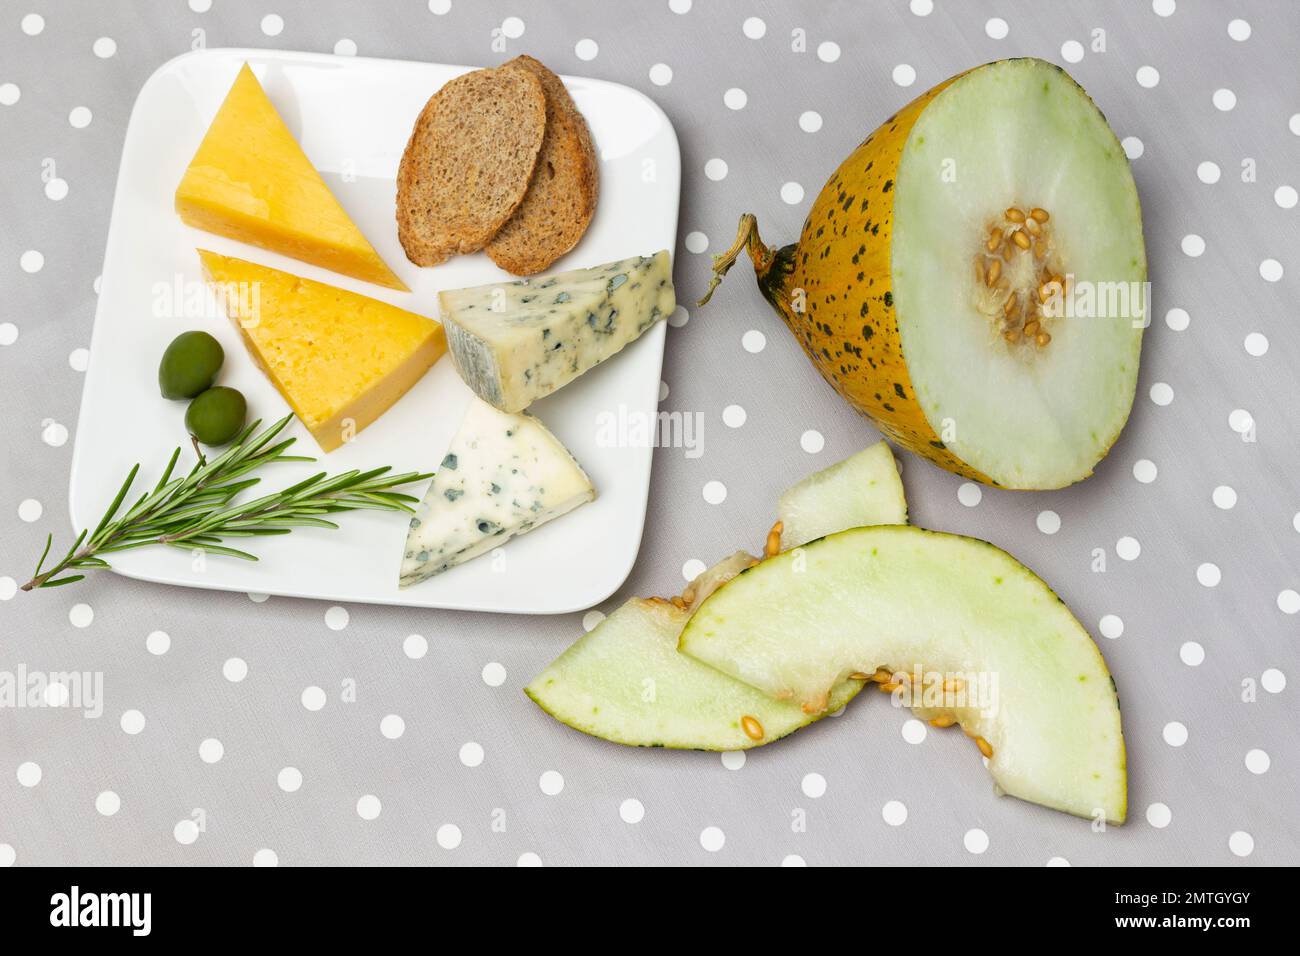 Käse, Brot, grüne Oliven und Rosmarin auf einem weißen Teller. Melonenscheiben auf dem Tisch. Flach verlegt. Grauer weißer Hintergrund mit Punktmuster. Stockfoto